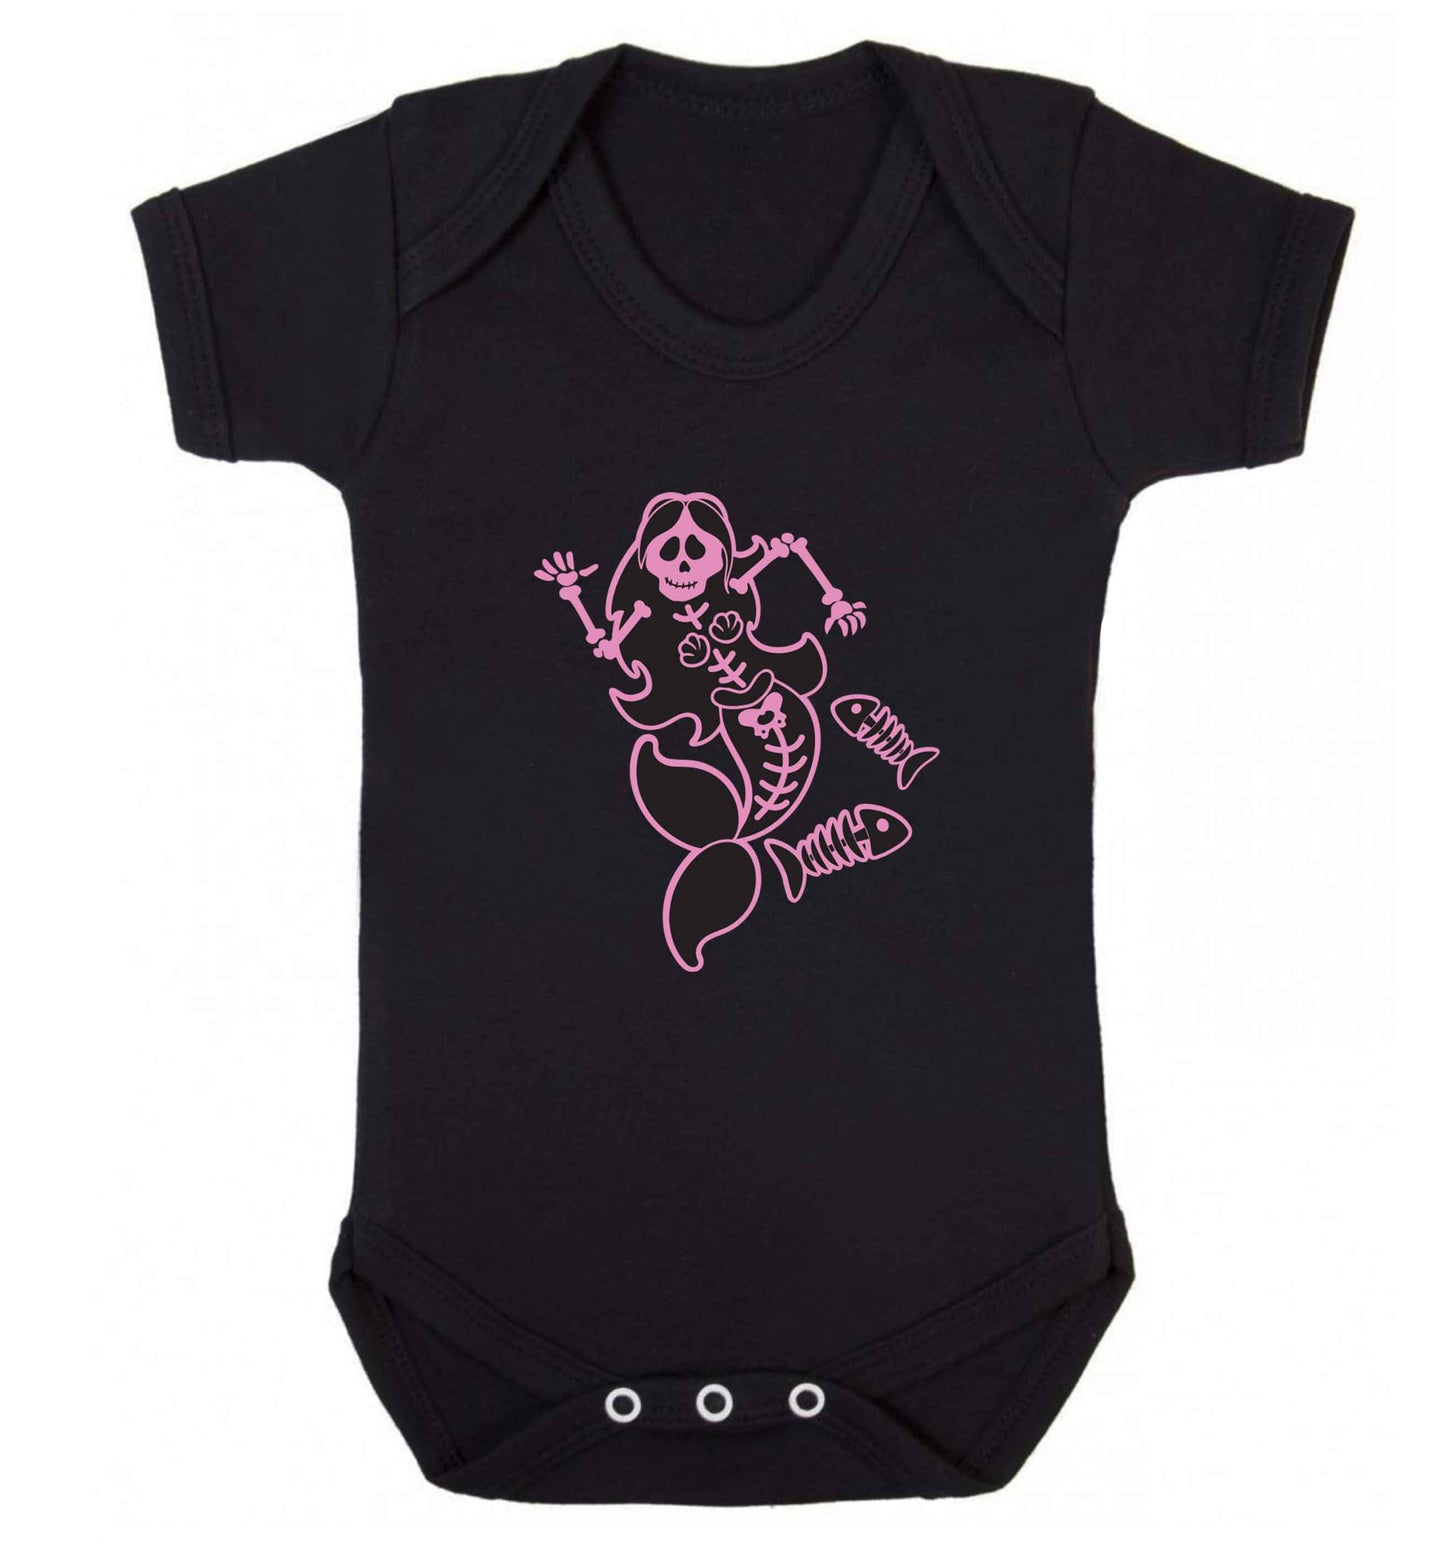 Skeleton mermaid baby vest black 18-24 months